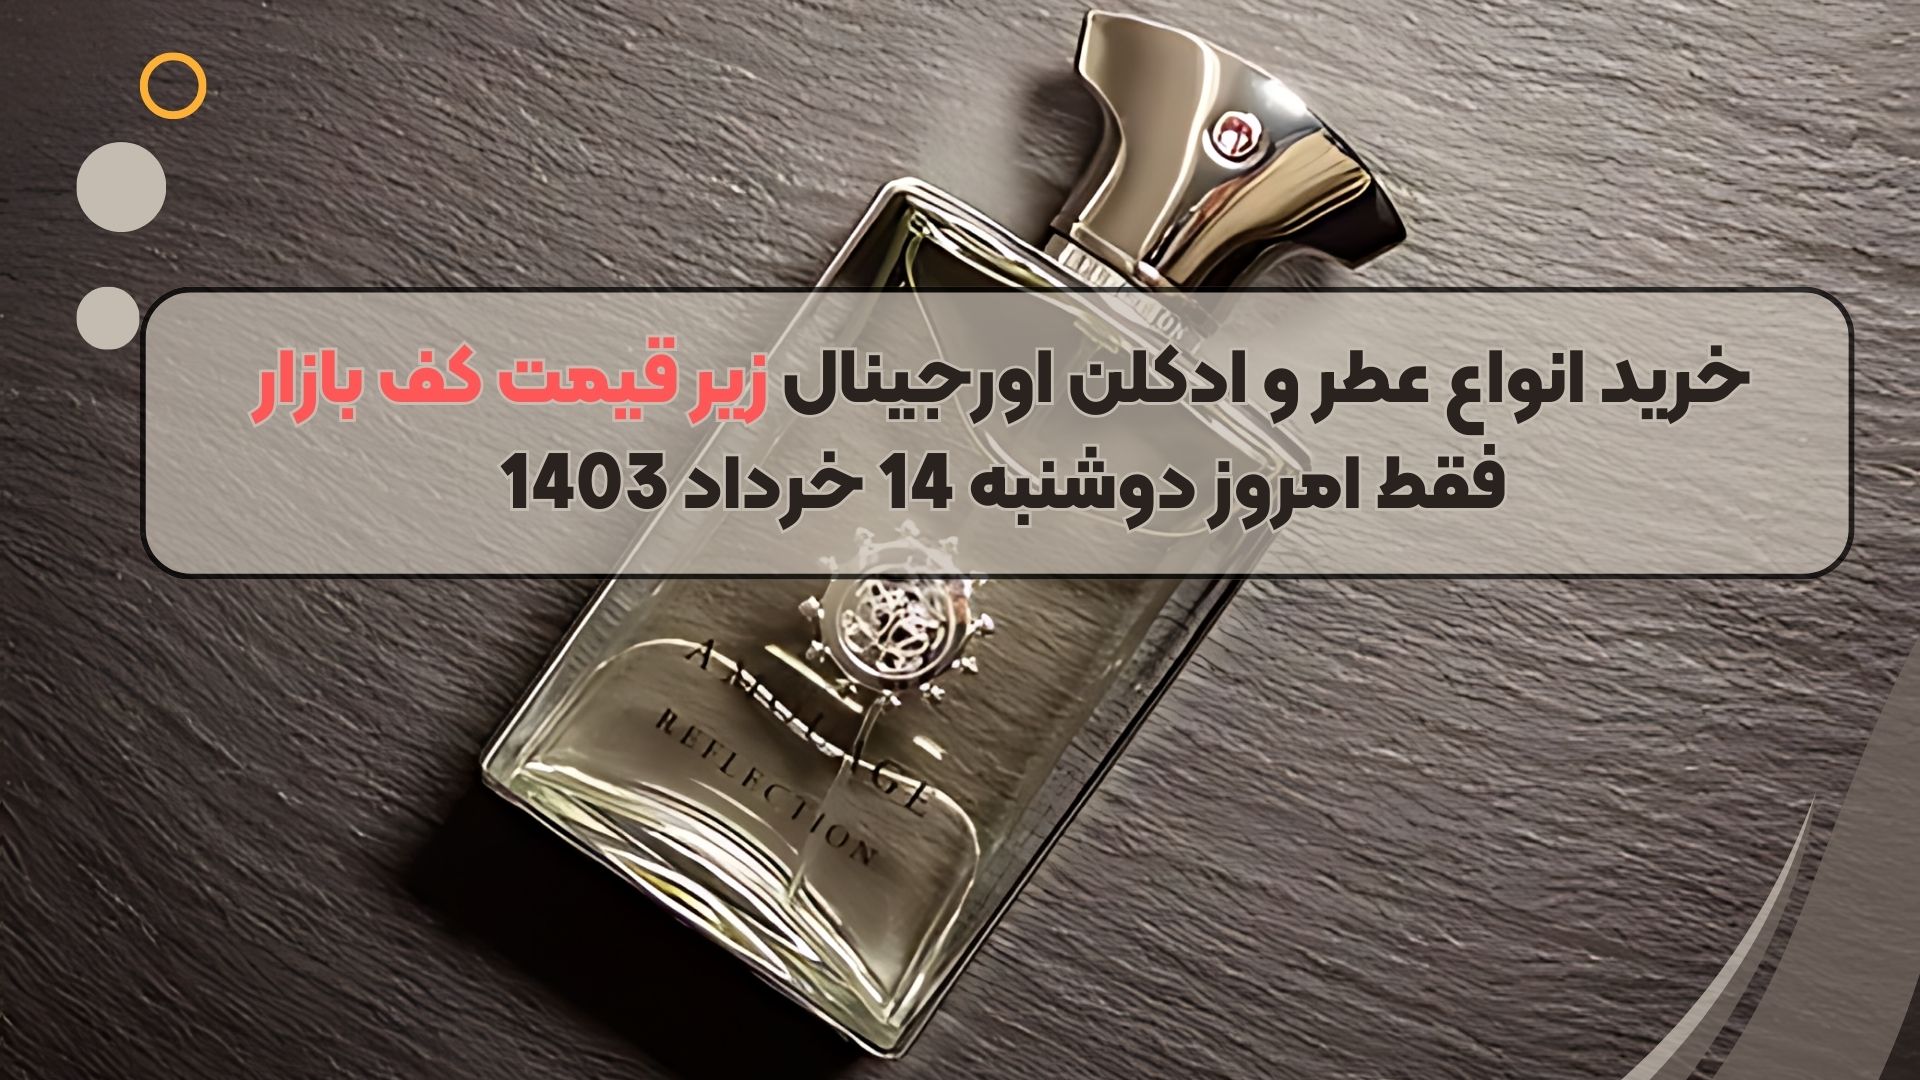 خرید انواع عطر و ادکلن اورجینال زیر قیمت کف بازار فقط امروز دوشنبه 14 خرداد 1403